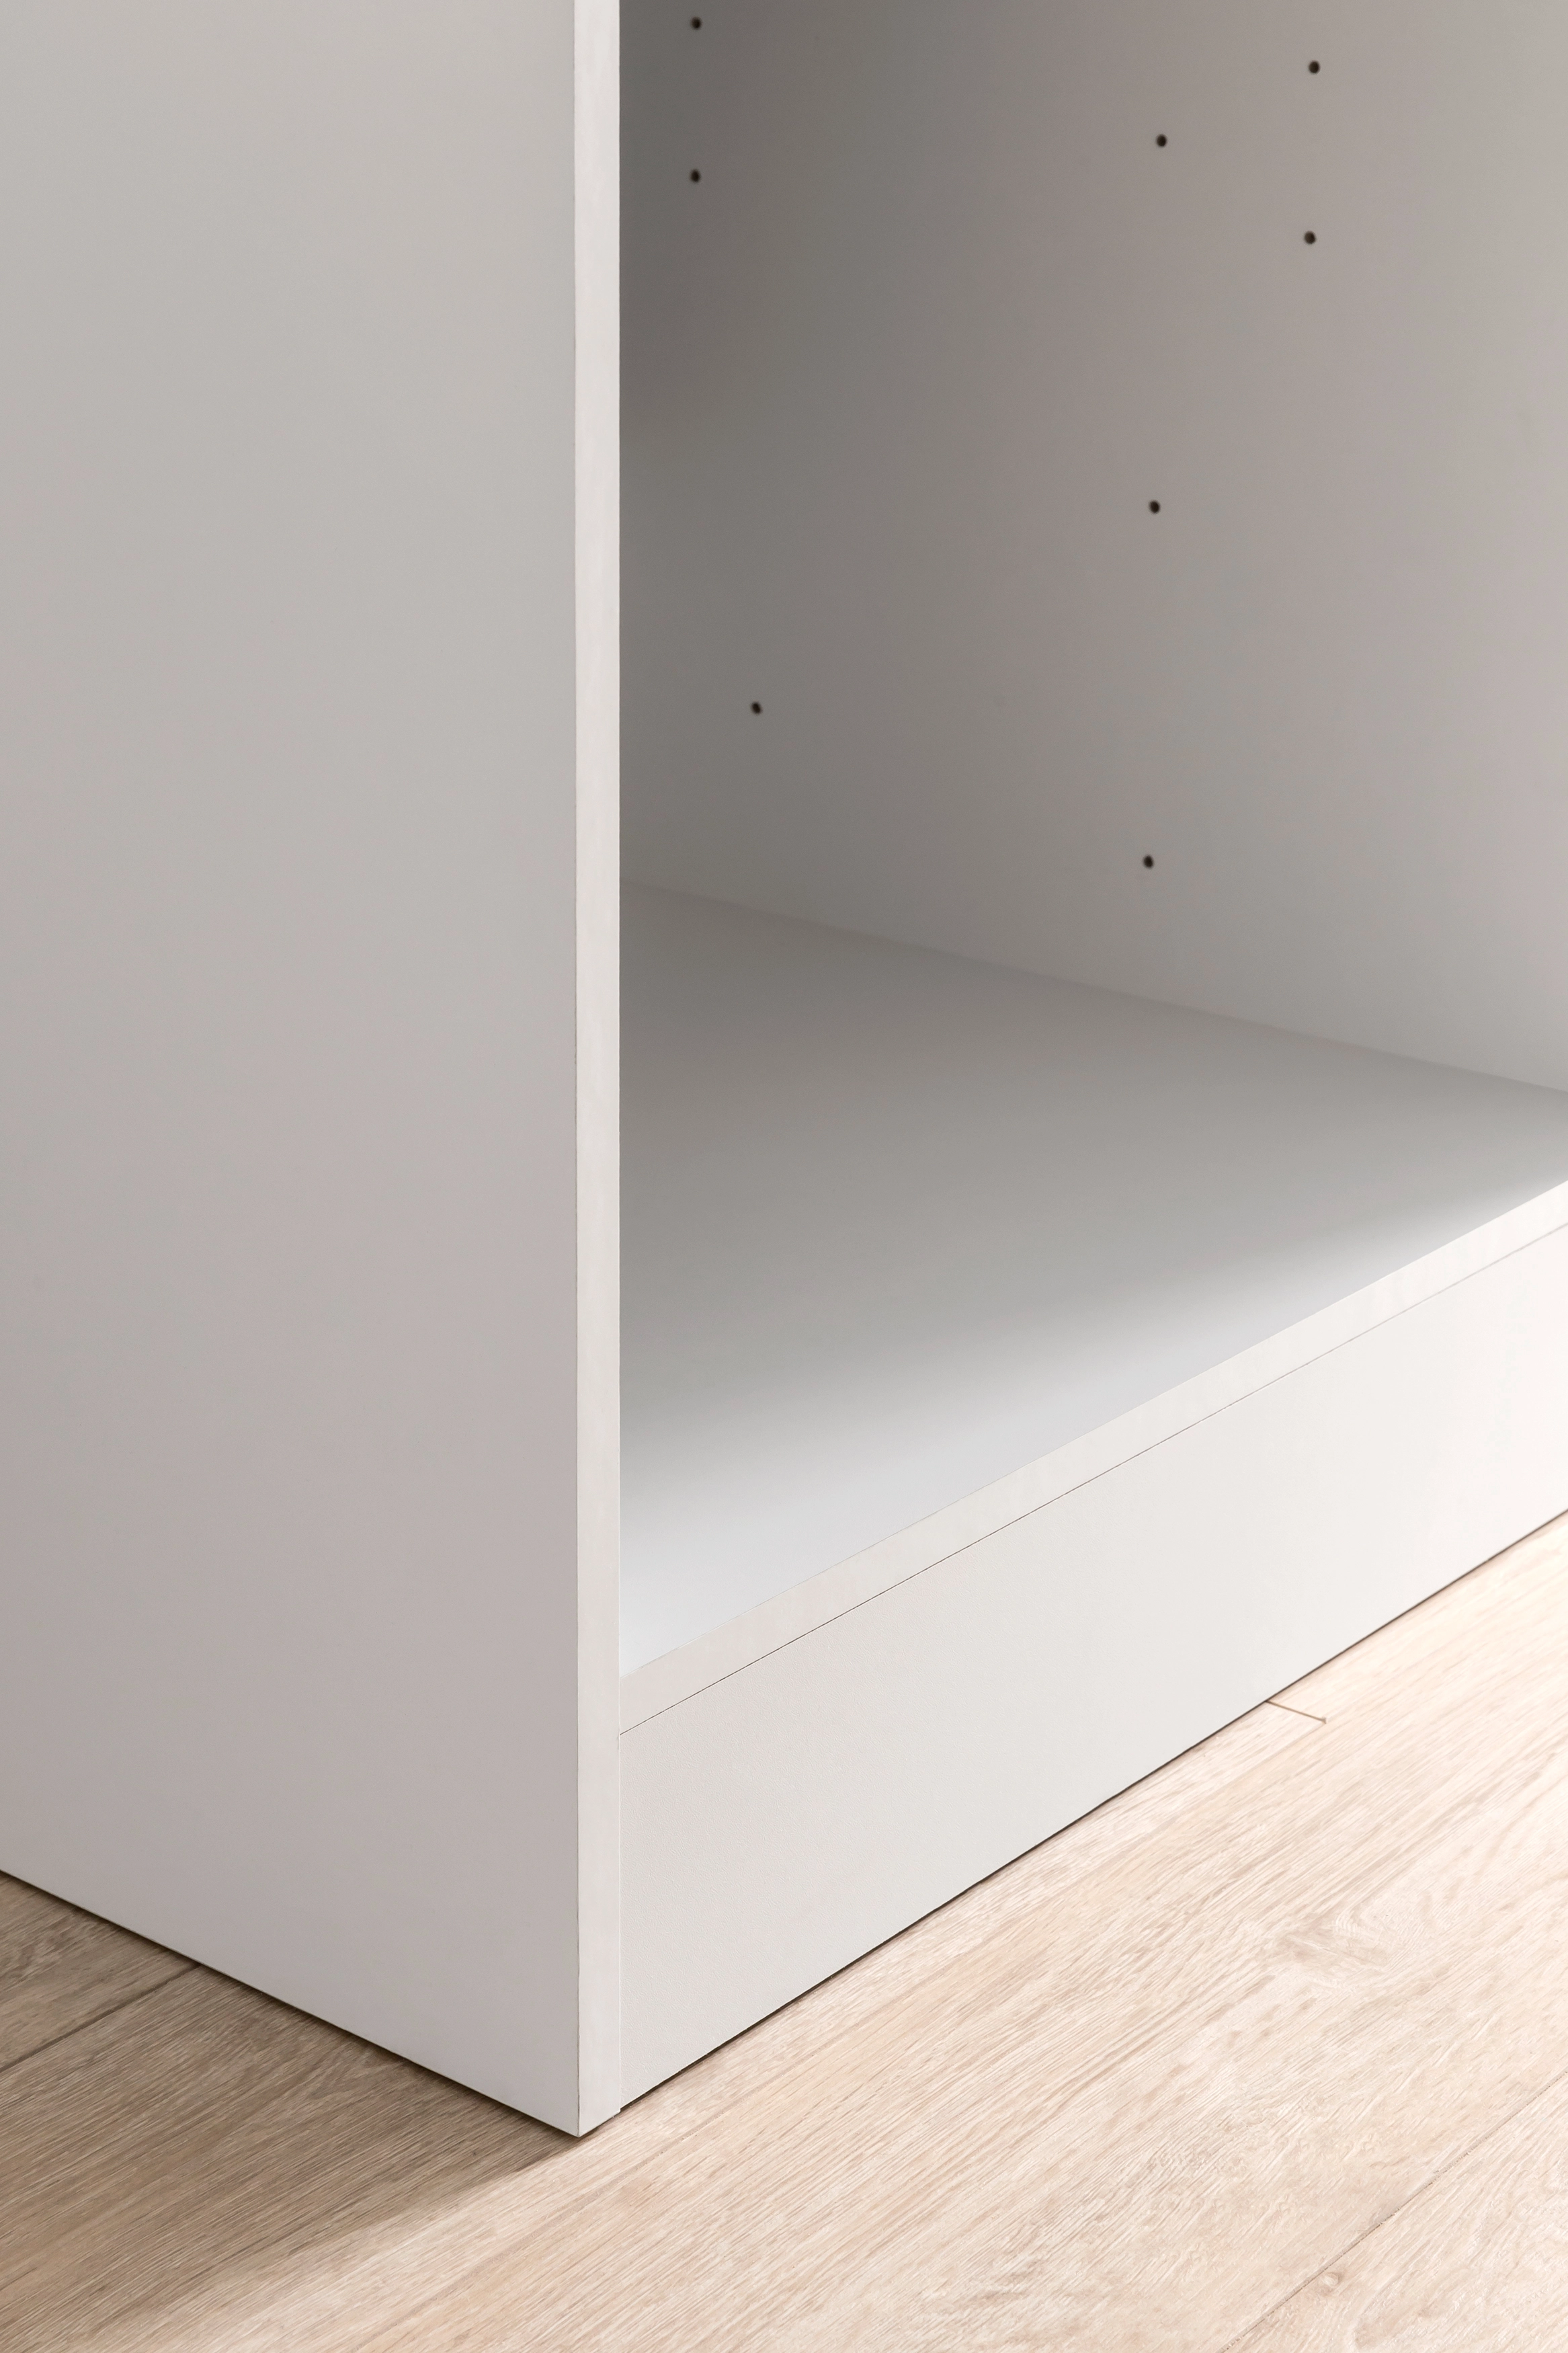 Held Möbel Küchen-Eckschrank Mailand 110 cm Hochglanz Graphit/Graphit  kaufen bei OBI